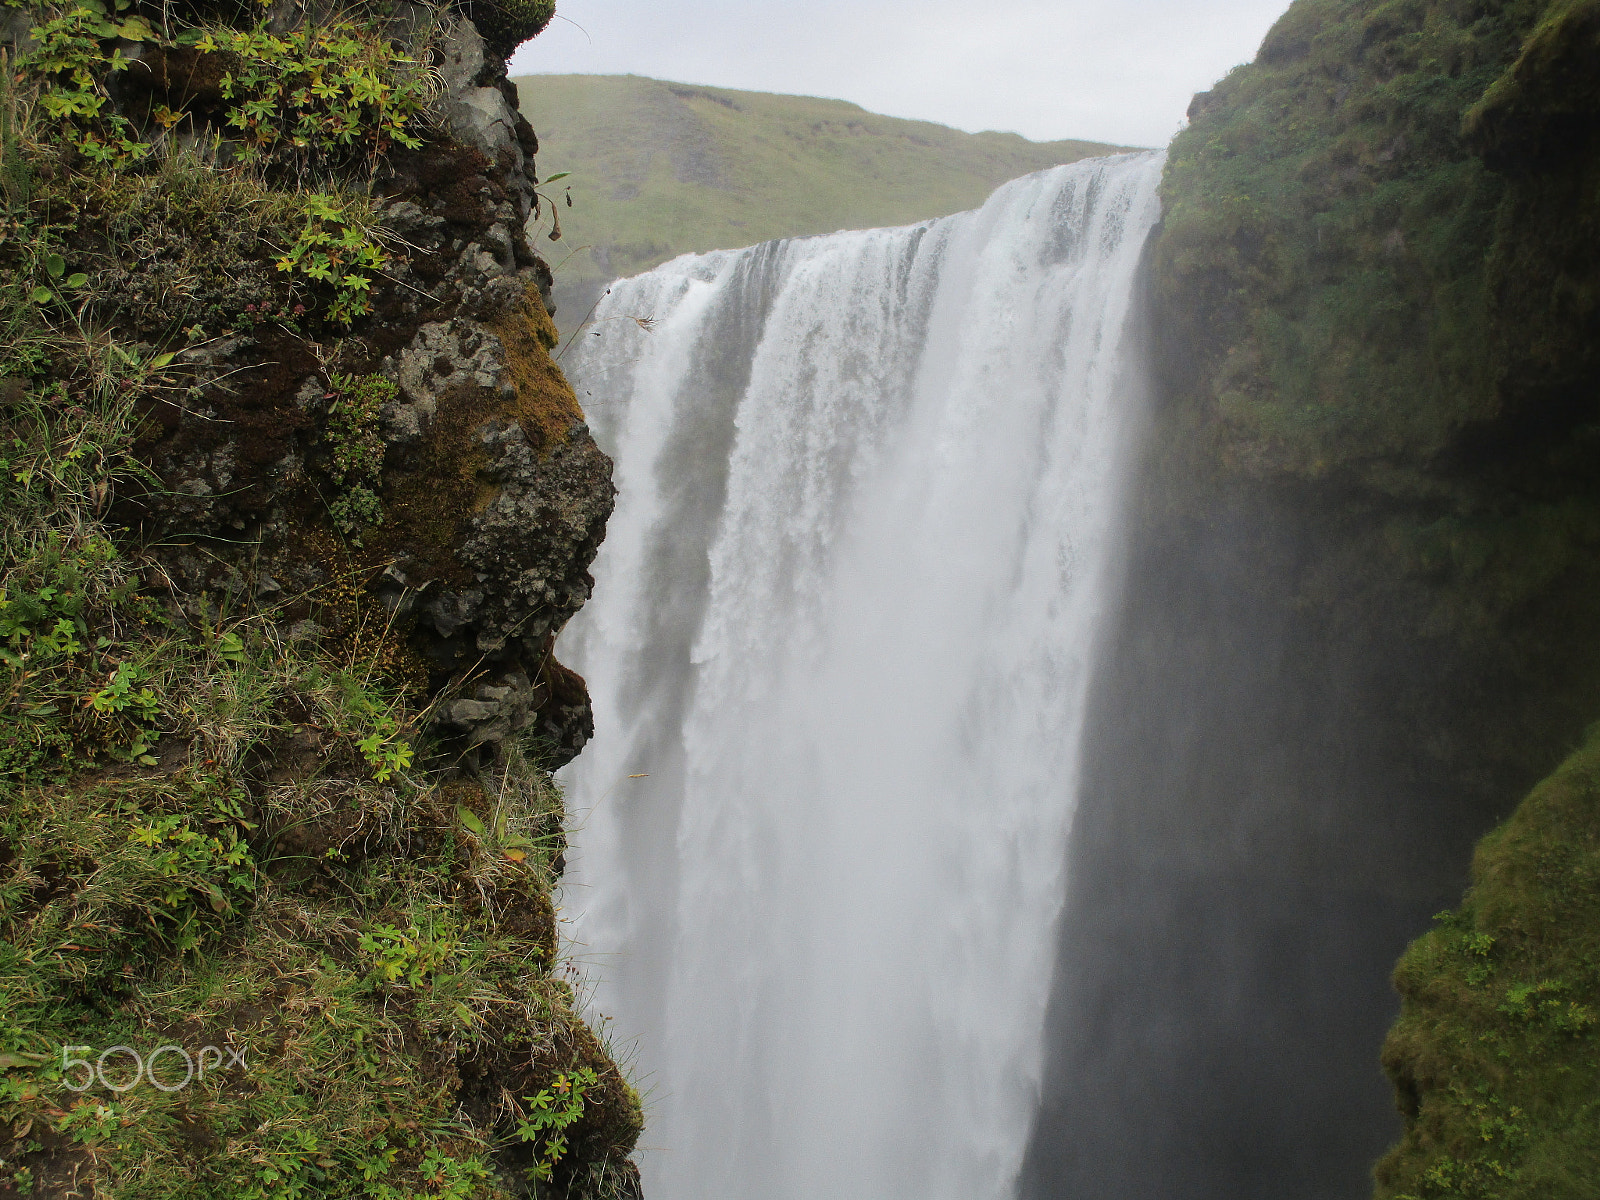 Canon PowerShot ELPH 150 IS (IXUS 155 / IXY 140) sample photo. Icelandic waterfall photography